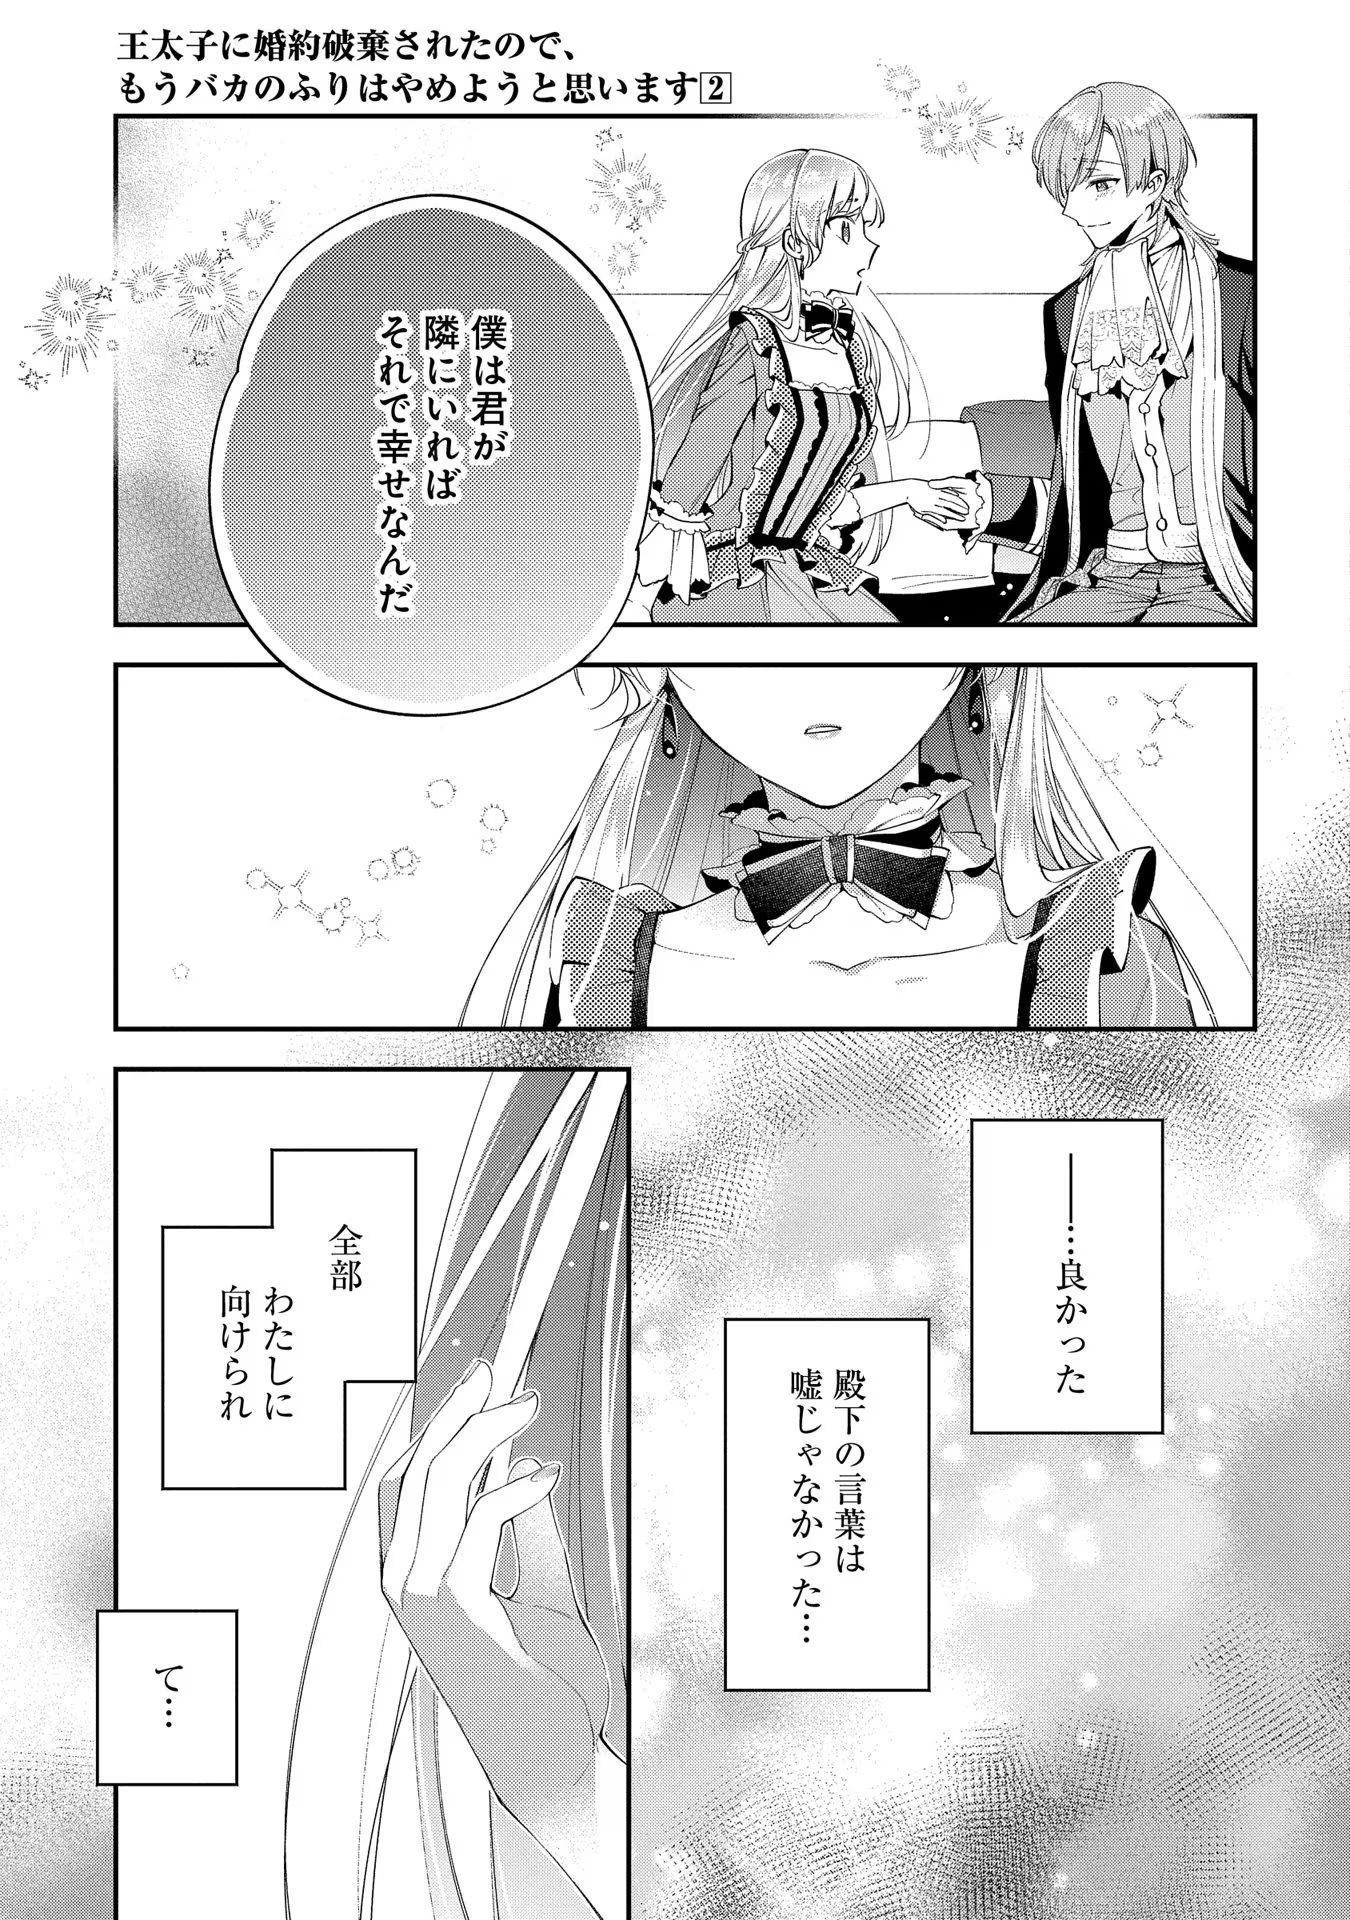 Outaishi ni Konyaku Hakisareta no de, Mou Baka no Furi wa Yameyou to Omoimasu - Chapter 9 - Page 19